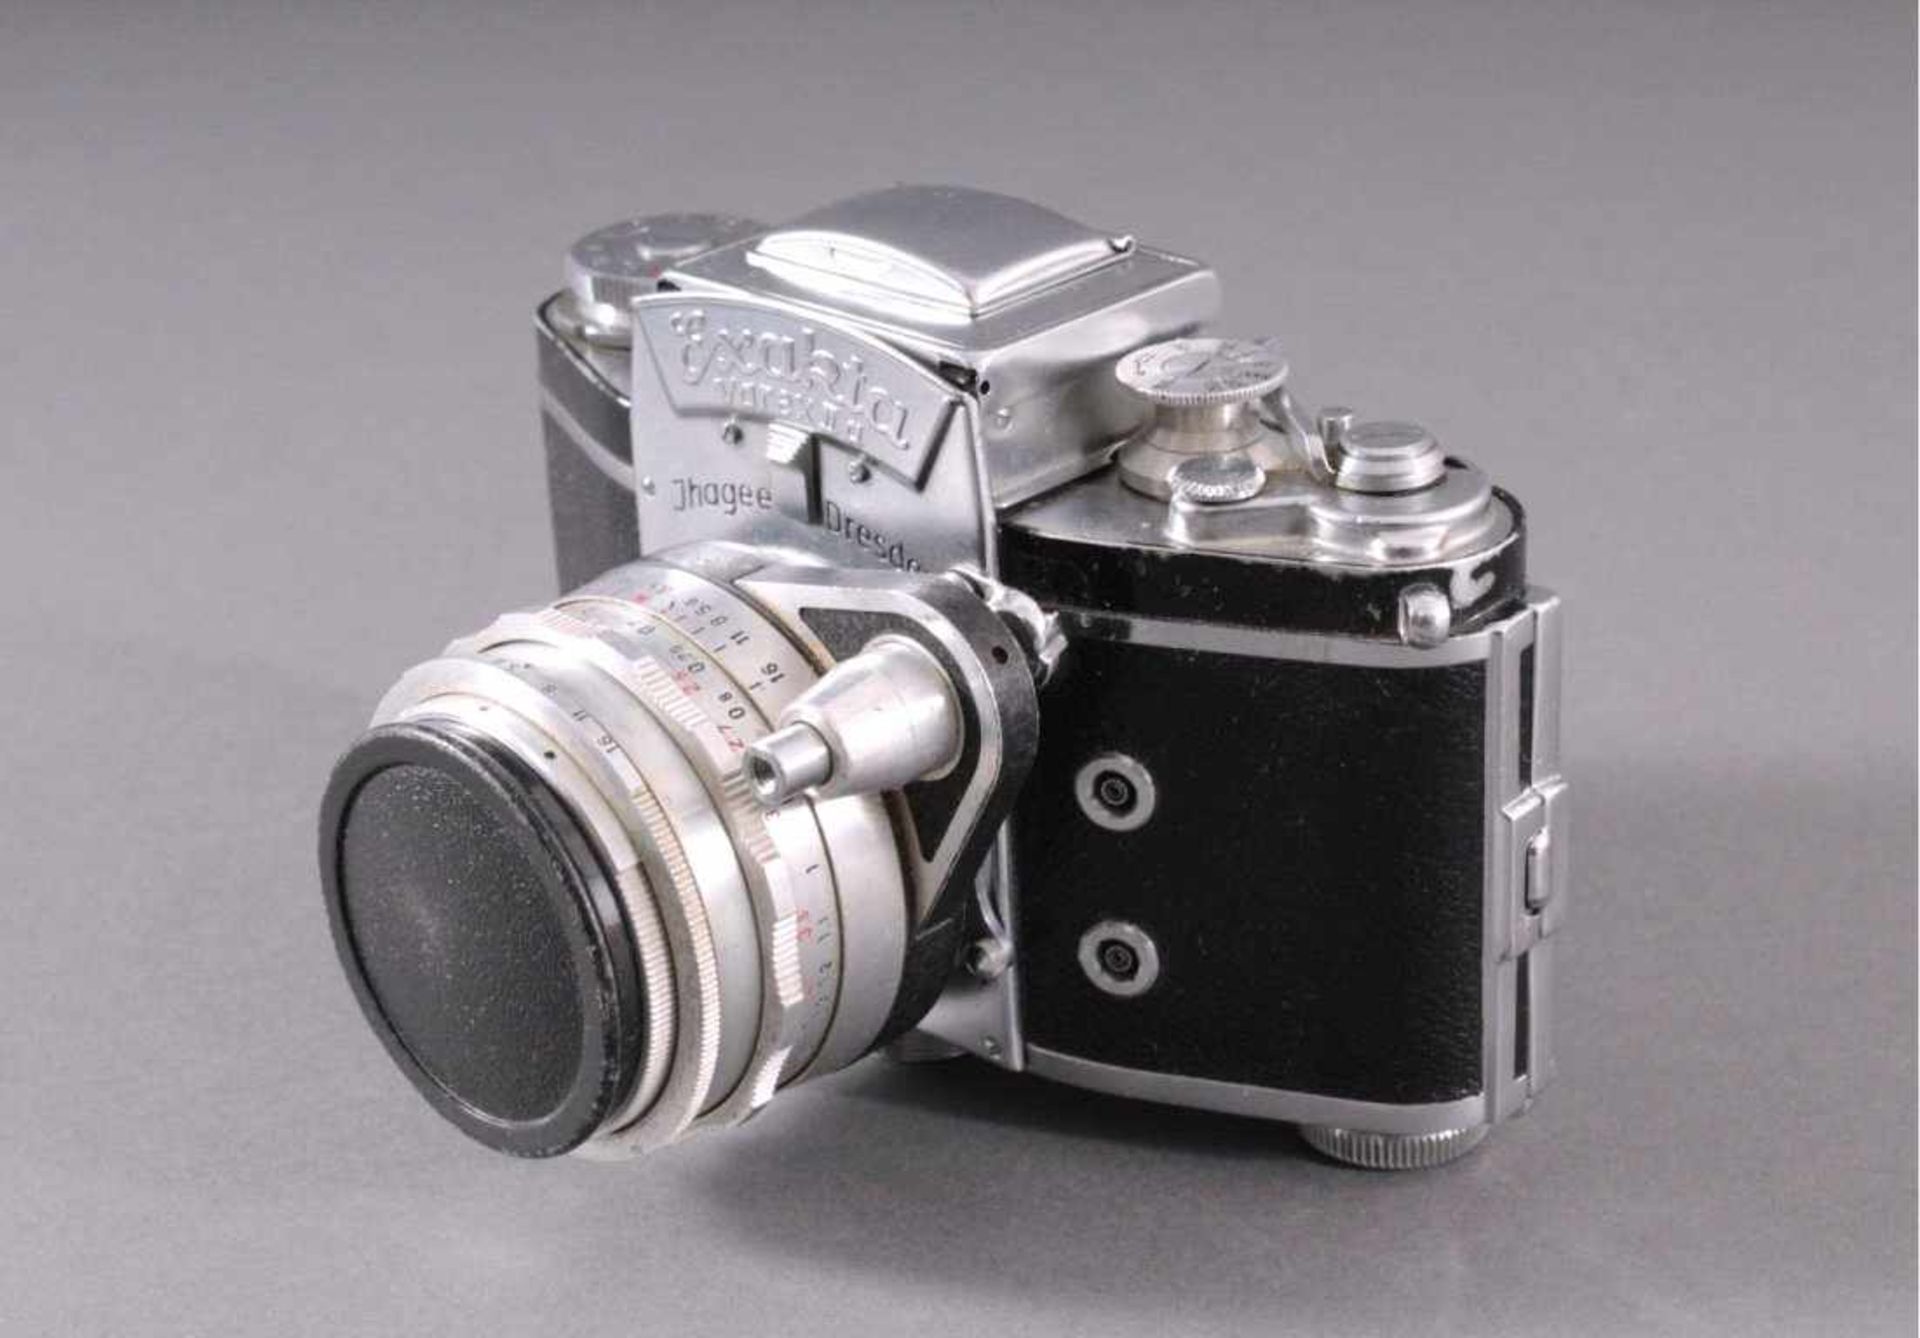 Spiegelreflex-Kamera Exakta Varex IIa. 24x36mm. 1958Ihagee Kamerawerk Dresden, Fabrik-Nummer - Bild 3 aus 4